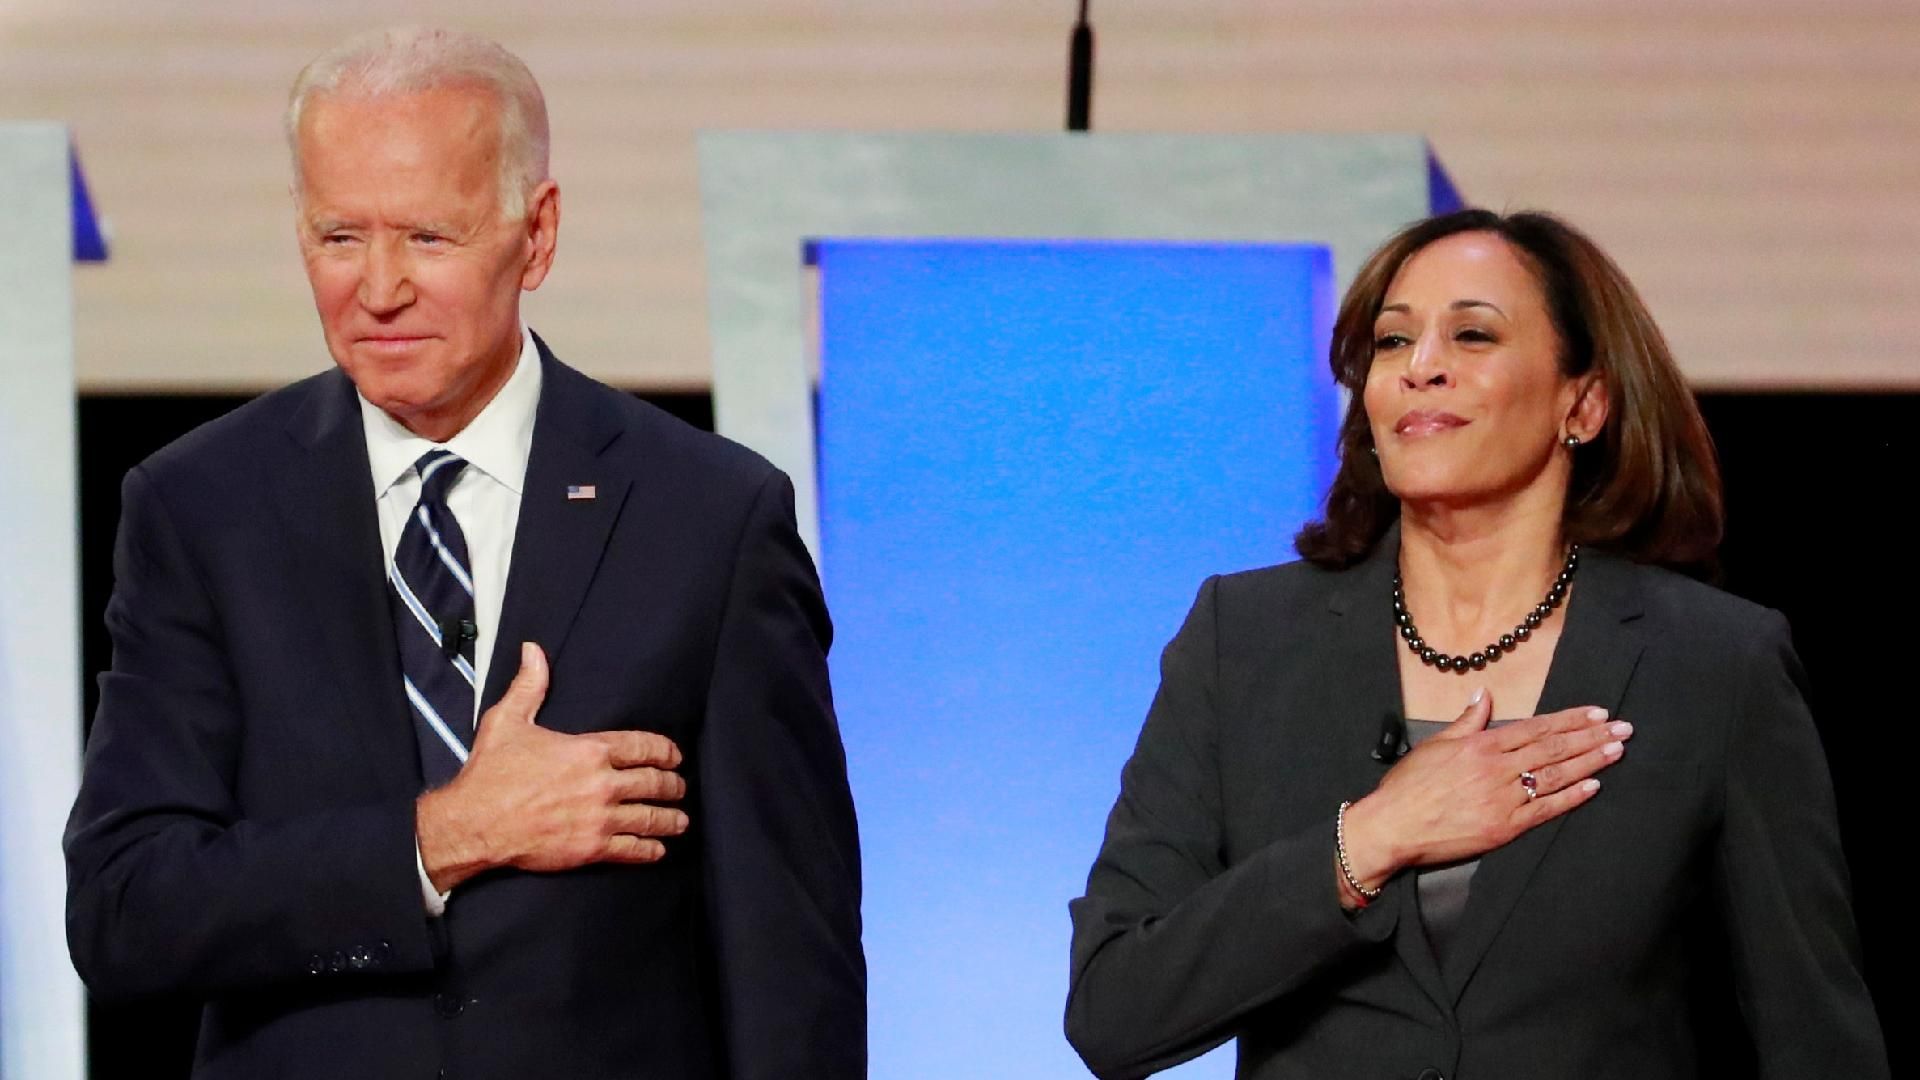 Joe Biden picks Senator Kamala Harris as running mate